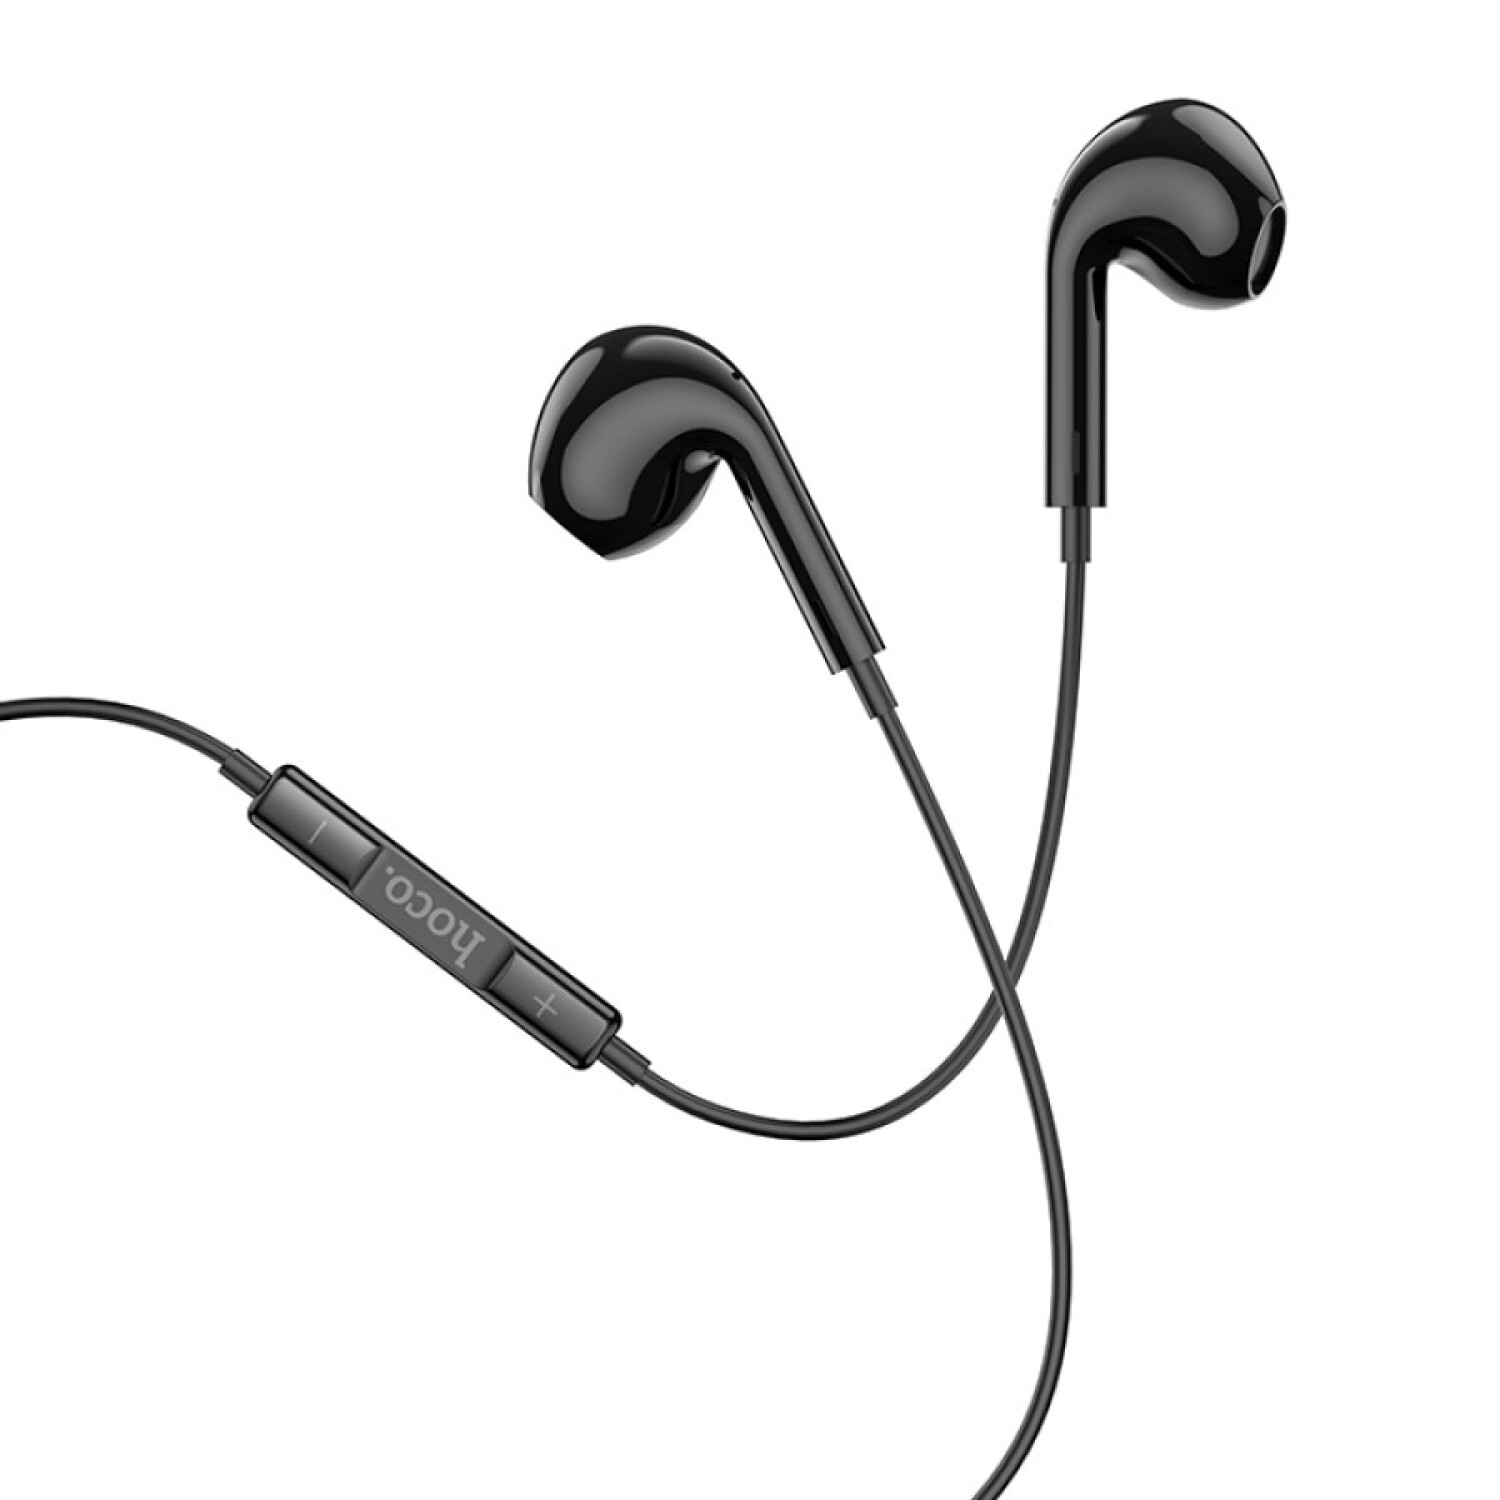 Brenthaven Auriculares con cable | USB C en la oreja resistentes 2  auriculares ajustables con cable largo libre de enredos - Ligeros,  duraderos y